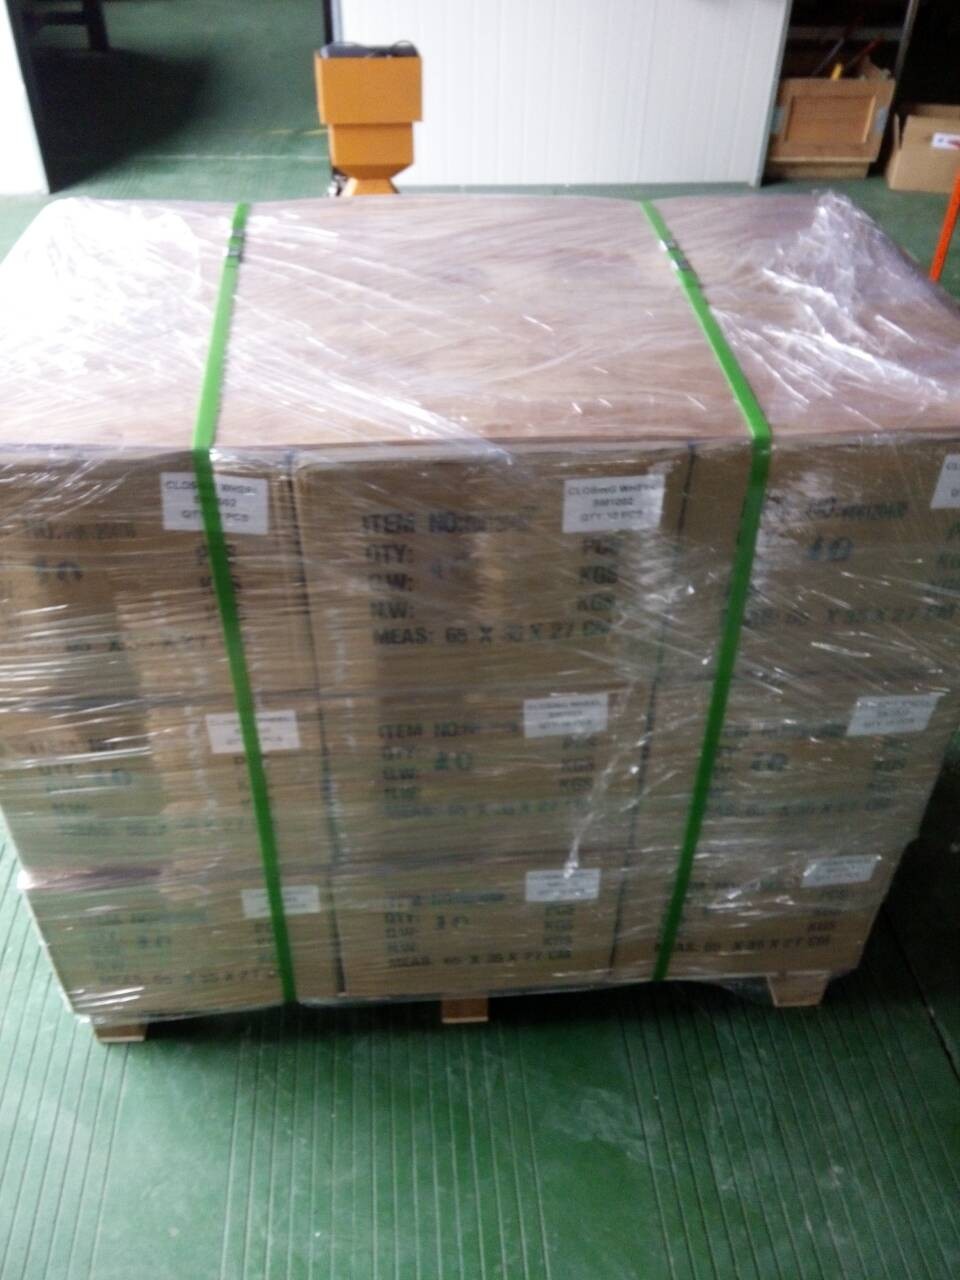 Piezas de la máquina de siembras de proveedores chinos OEM 6.5x14.5 '' Presione Wheel